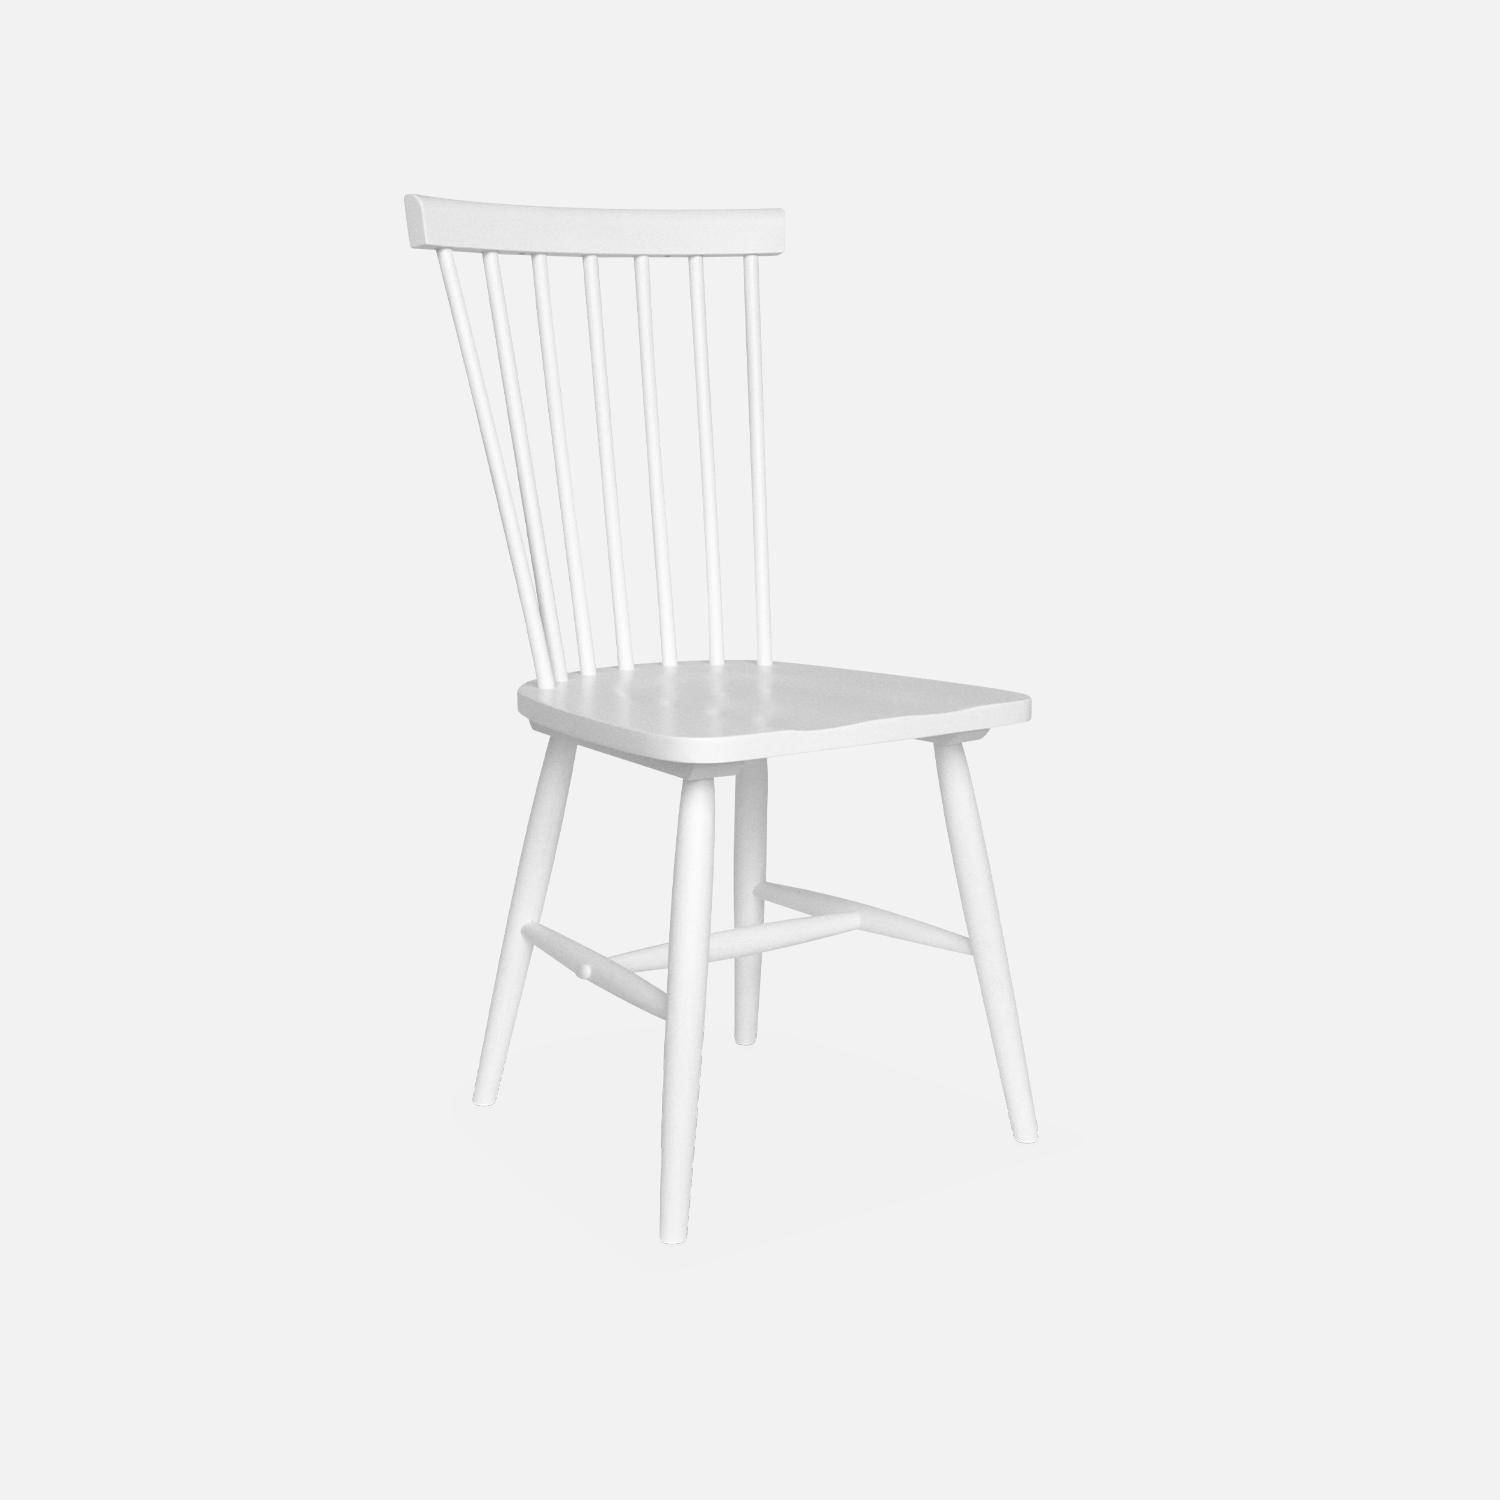 Set di 2 sedie da bar in legno di gomma bianco, ROMIE, L 50,8 x P 44,2 x H 90 cm. Consegna gratuita, garanzia di 2 anni, miglior prezzo garantito! Photo5